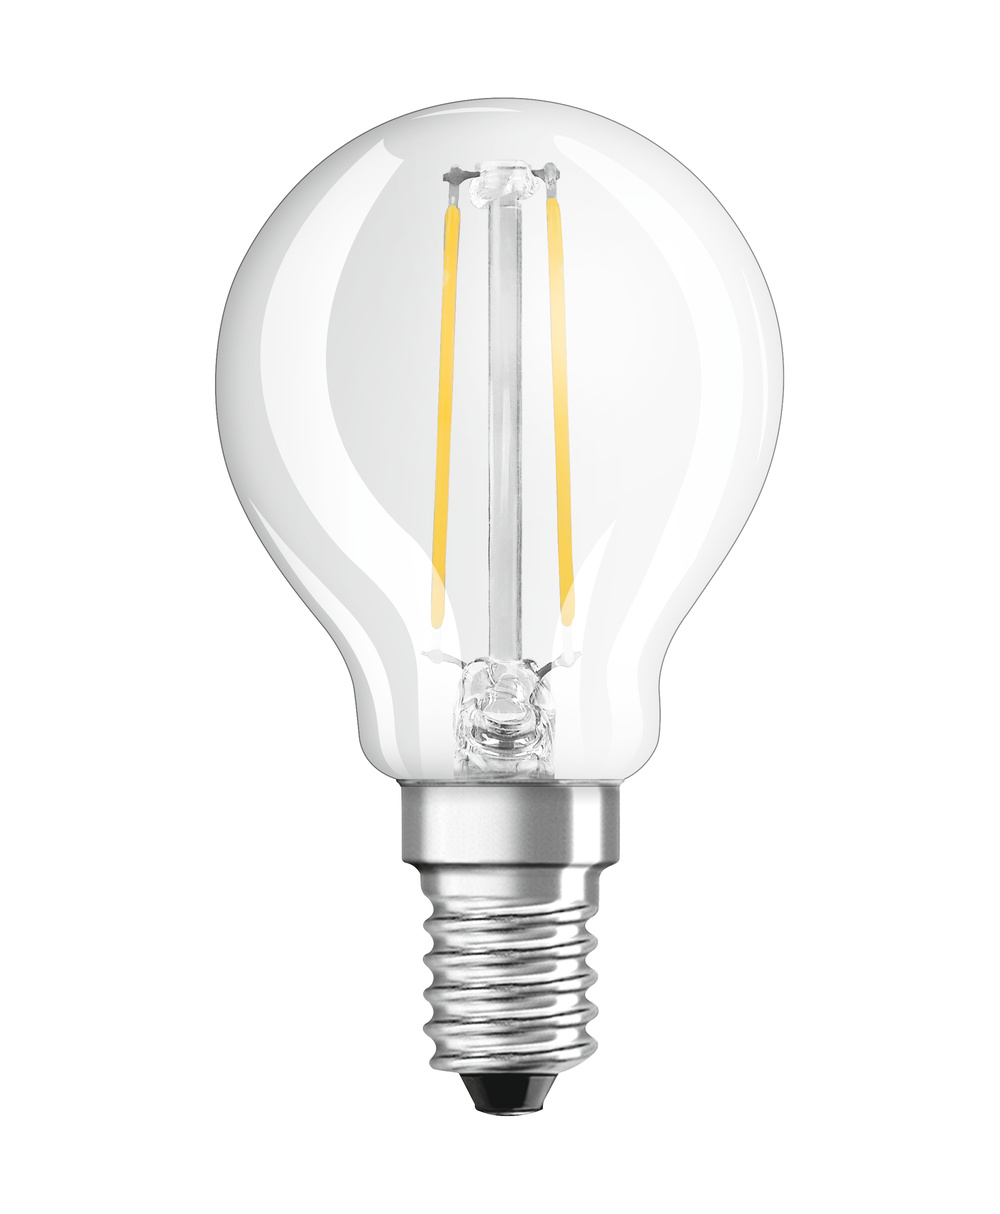 Ledvance LED lamp PARATHOM CLASSIC P 25  2.5 W/2700 K E14  - 4099854069215